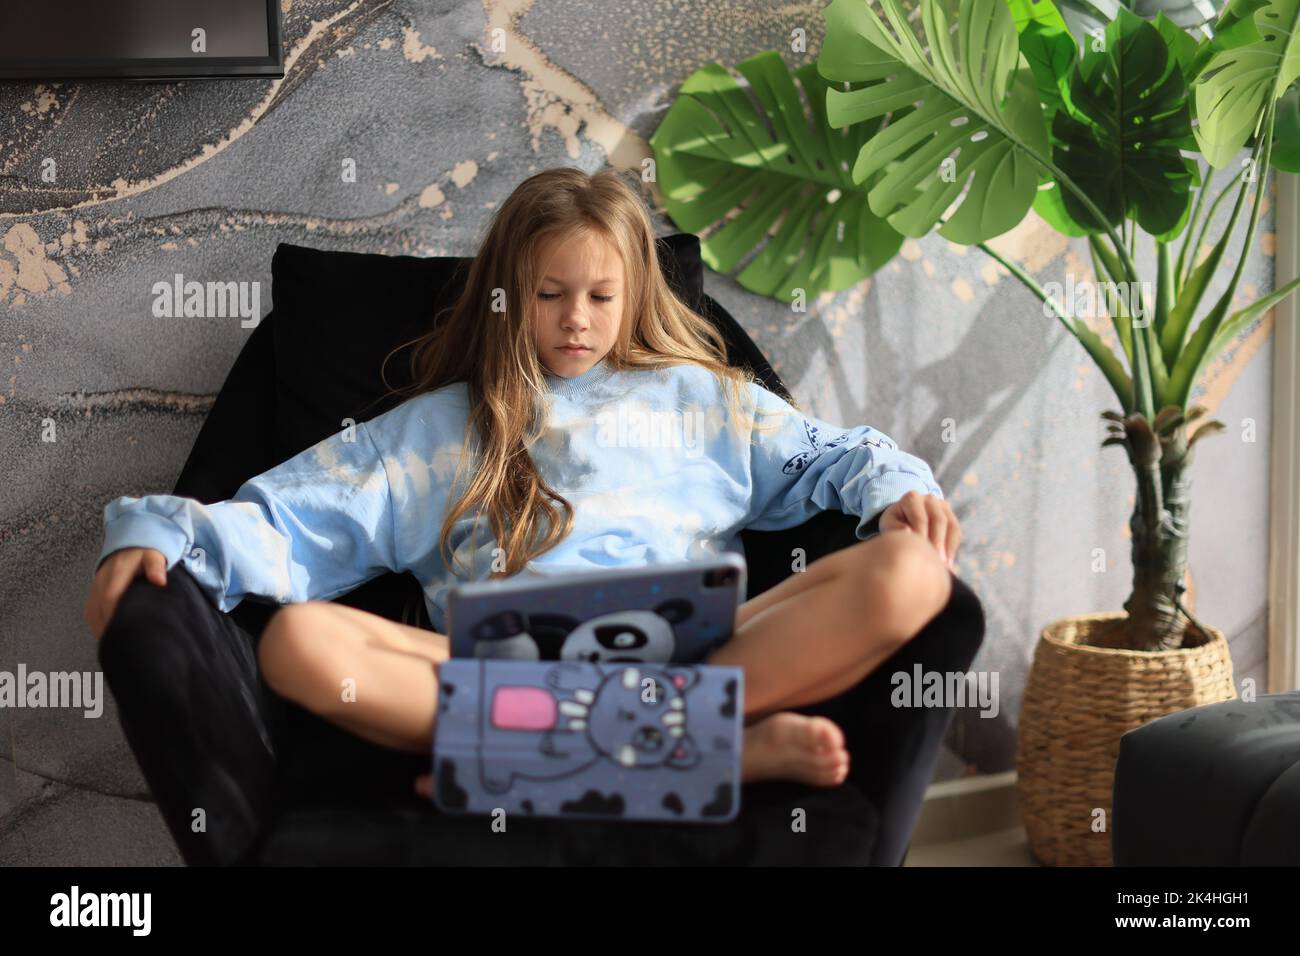 Curiosa ragazza carina che utilizza il dispositivo con tecnologia tablet digitale seduto sul divano da sola Foto Stock